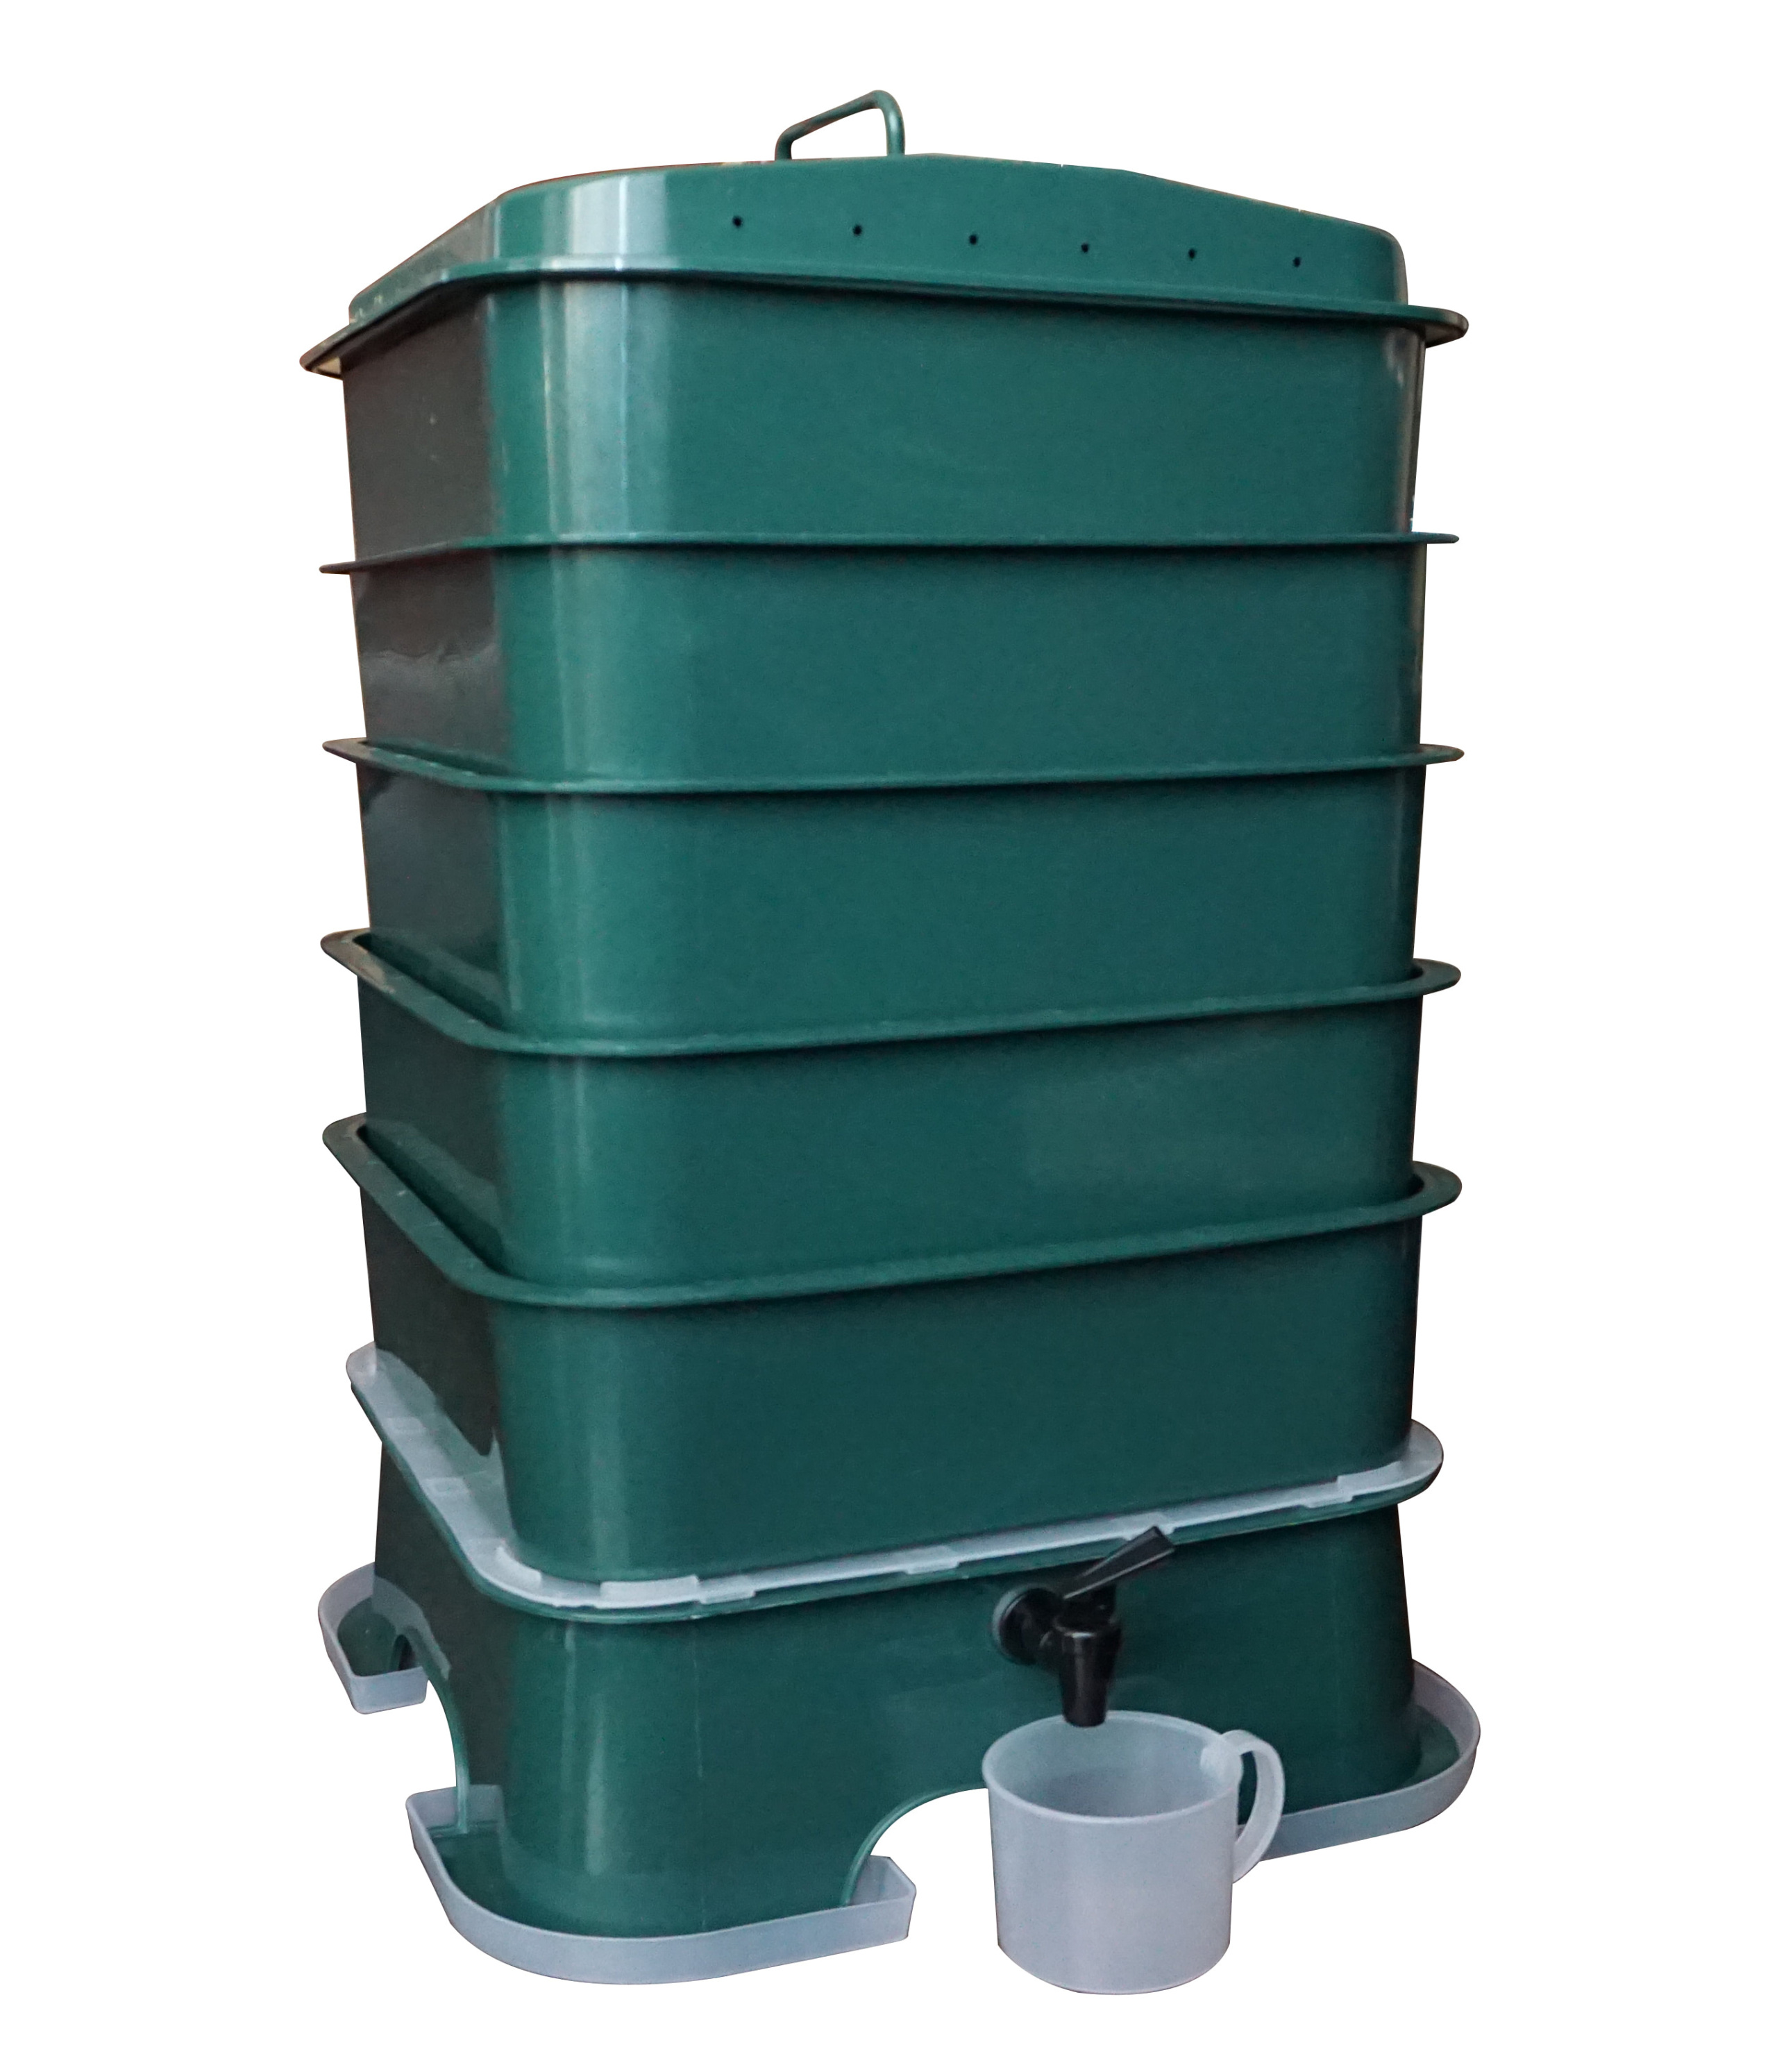 5 Tray Vermihut Plus Worm Compost Bin